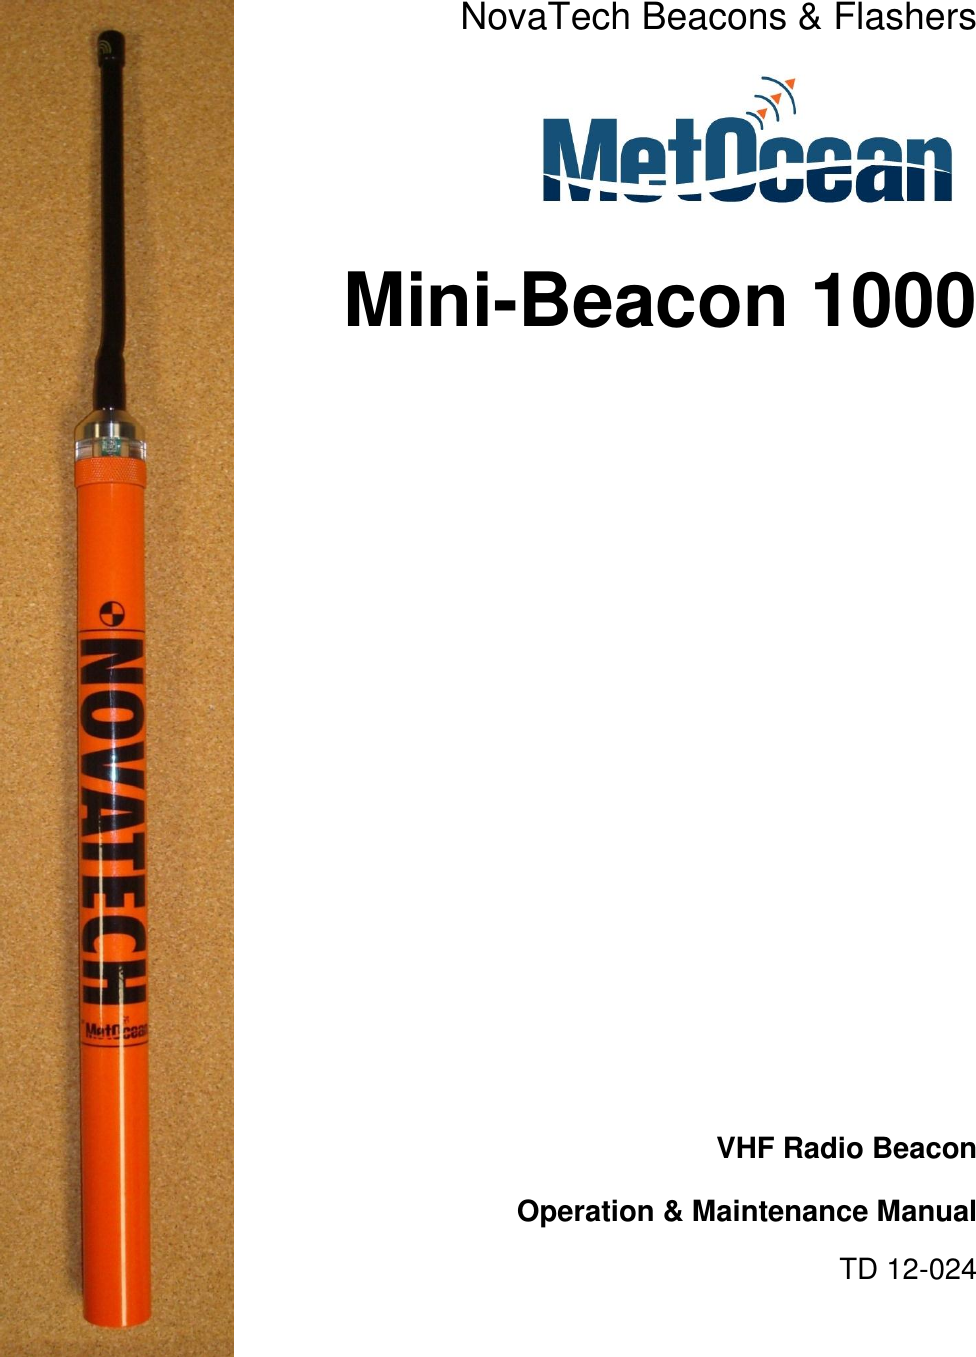 NovaTech Beacons &amp; Flashers  Mini-Beacon 1000              VHF Radio Beacon  Operation &amp; Maintenance Manual TD 12-024 